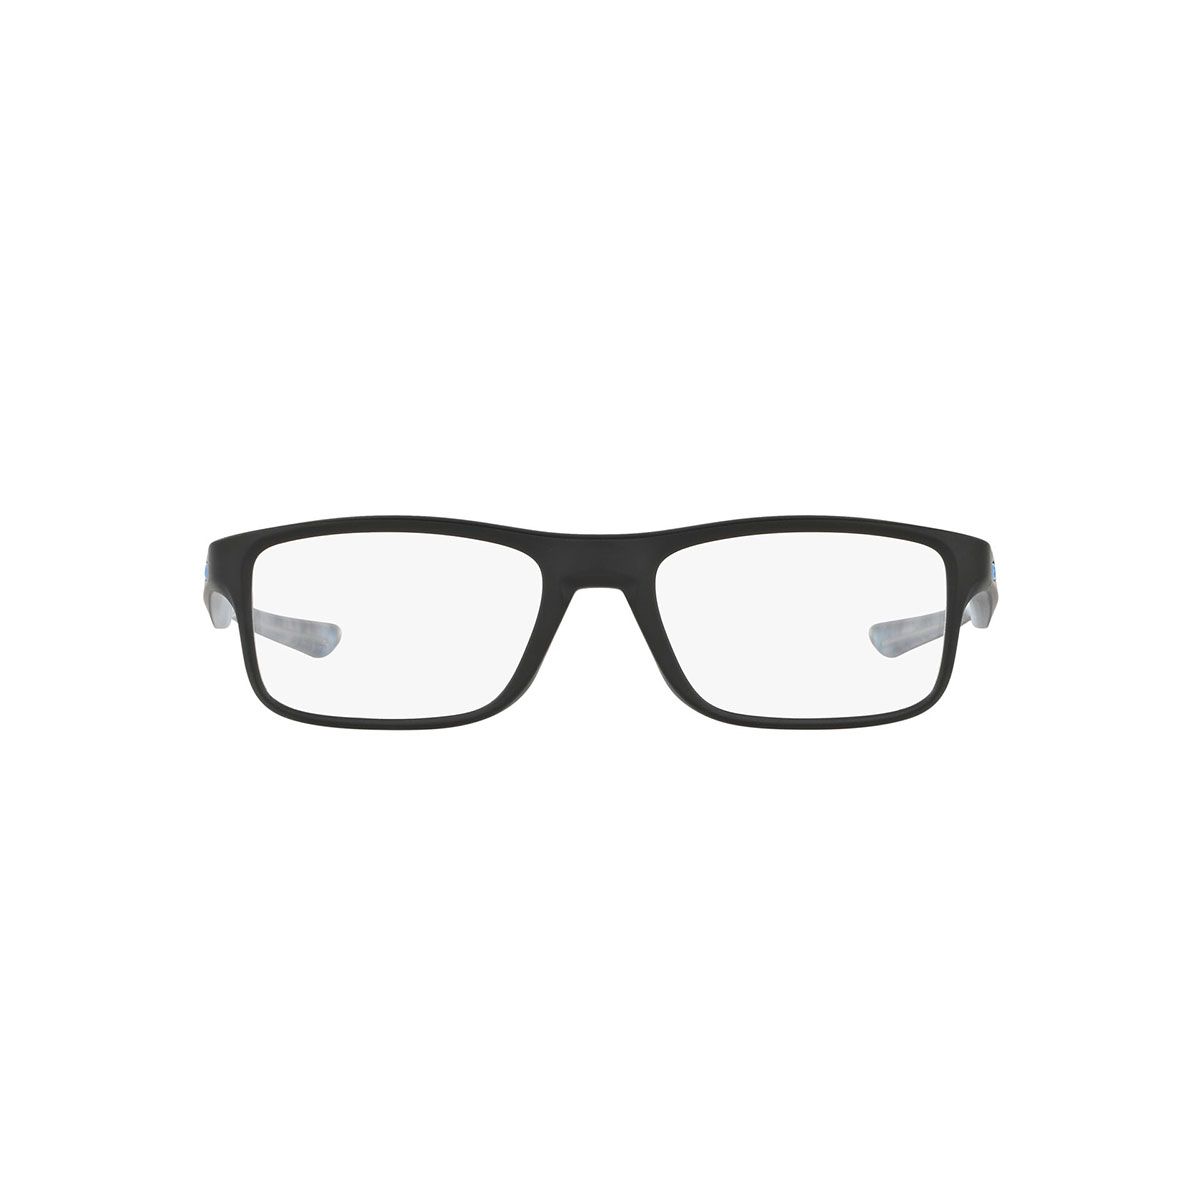 OX8081 Rectangle Eyeglasses 808101 - size  51